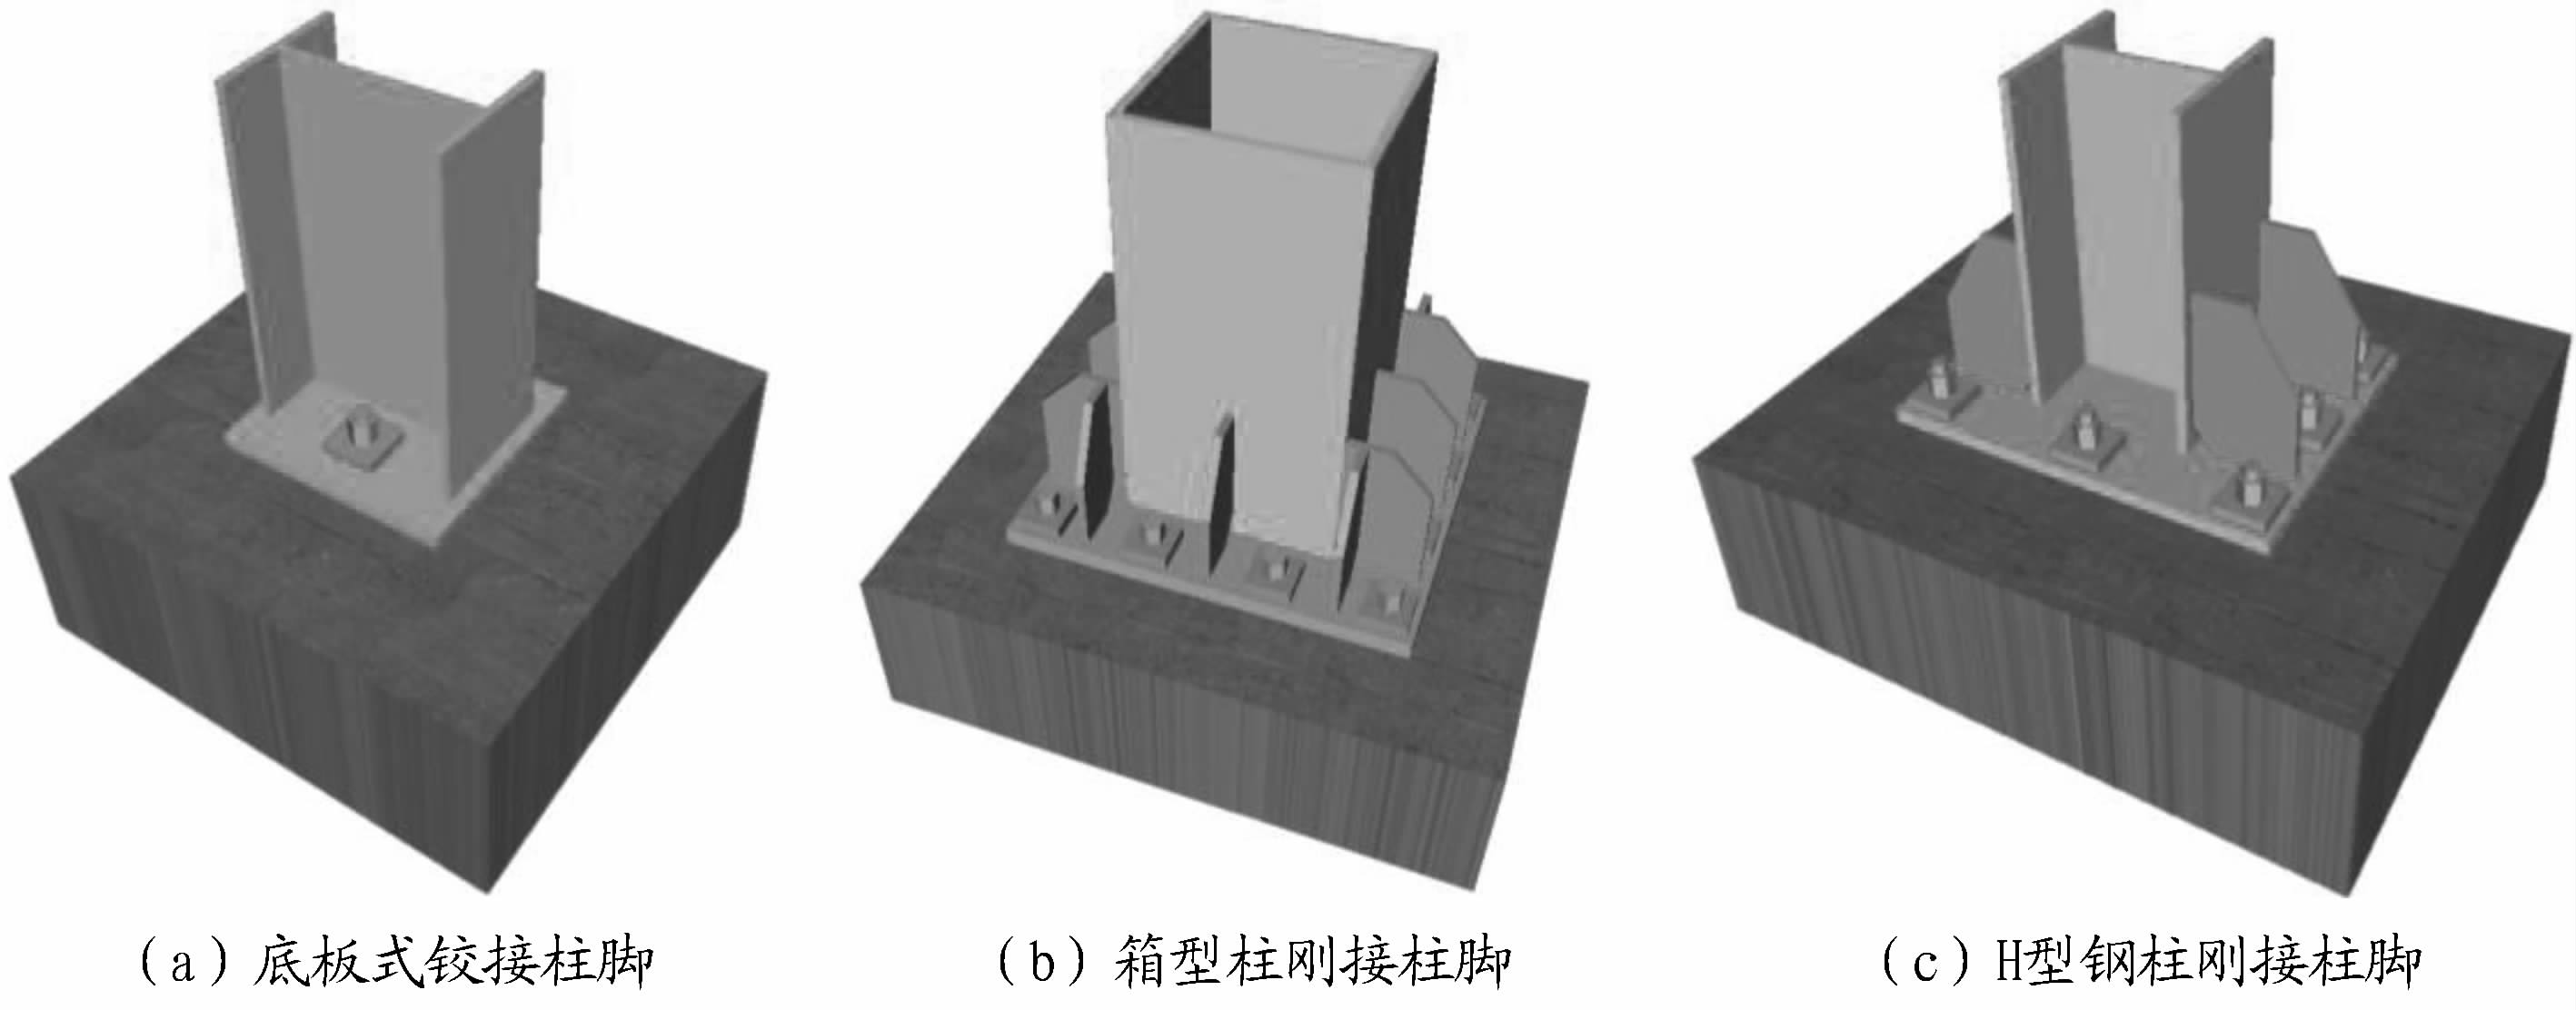 中式柱础 柱子 石鼓3d模型下载_ID14248824_3dmax免费模型-欧模网